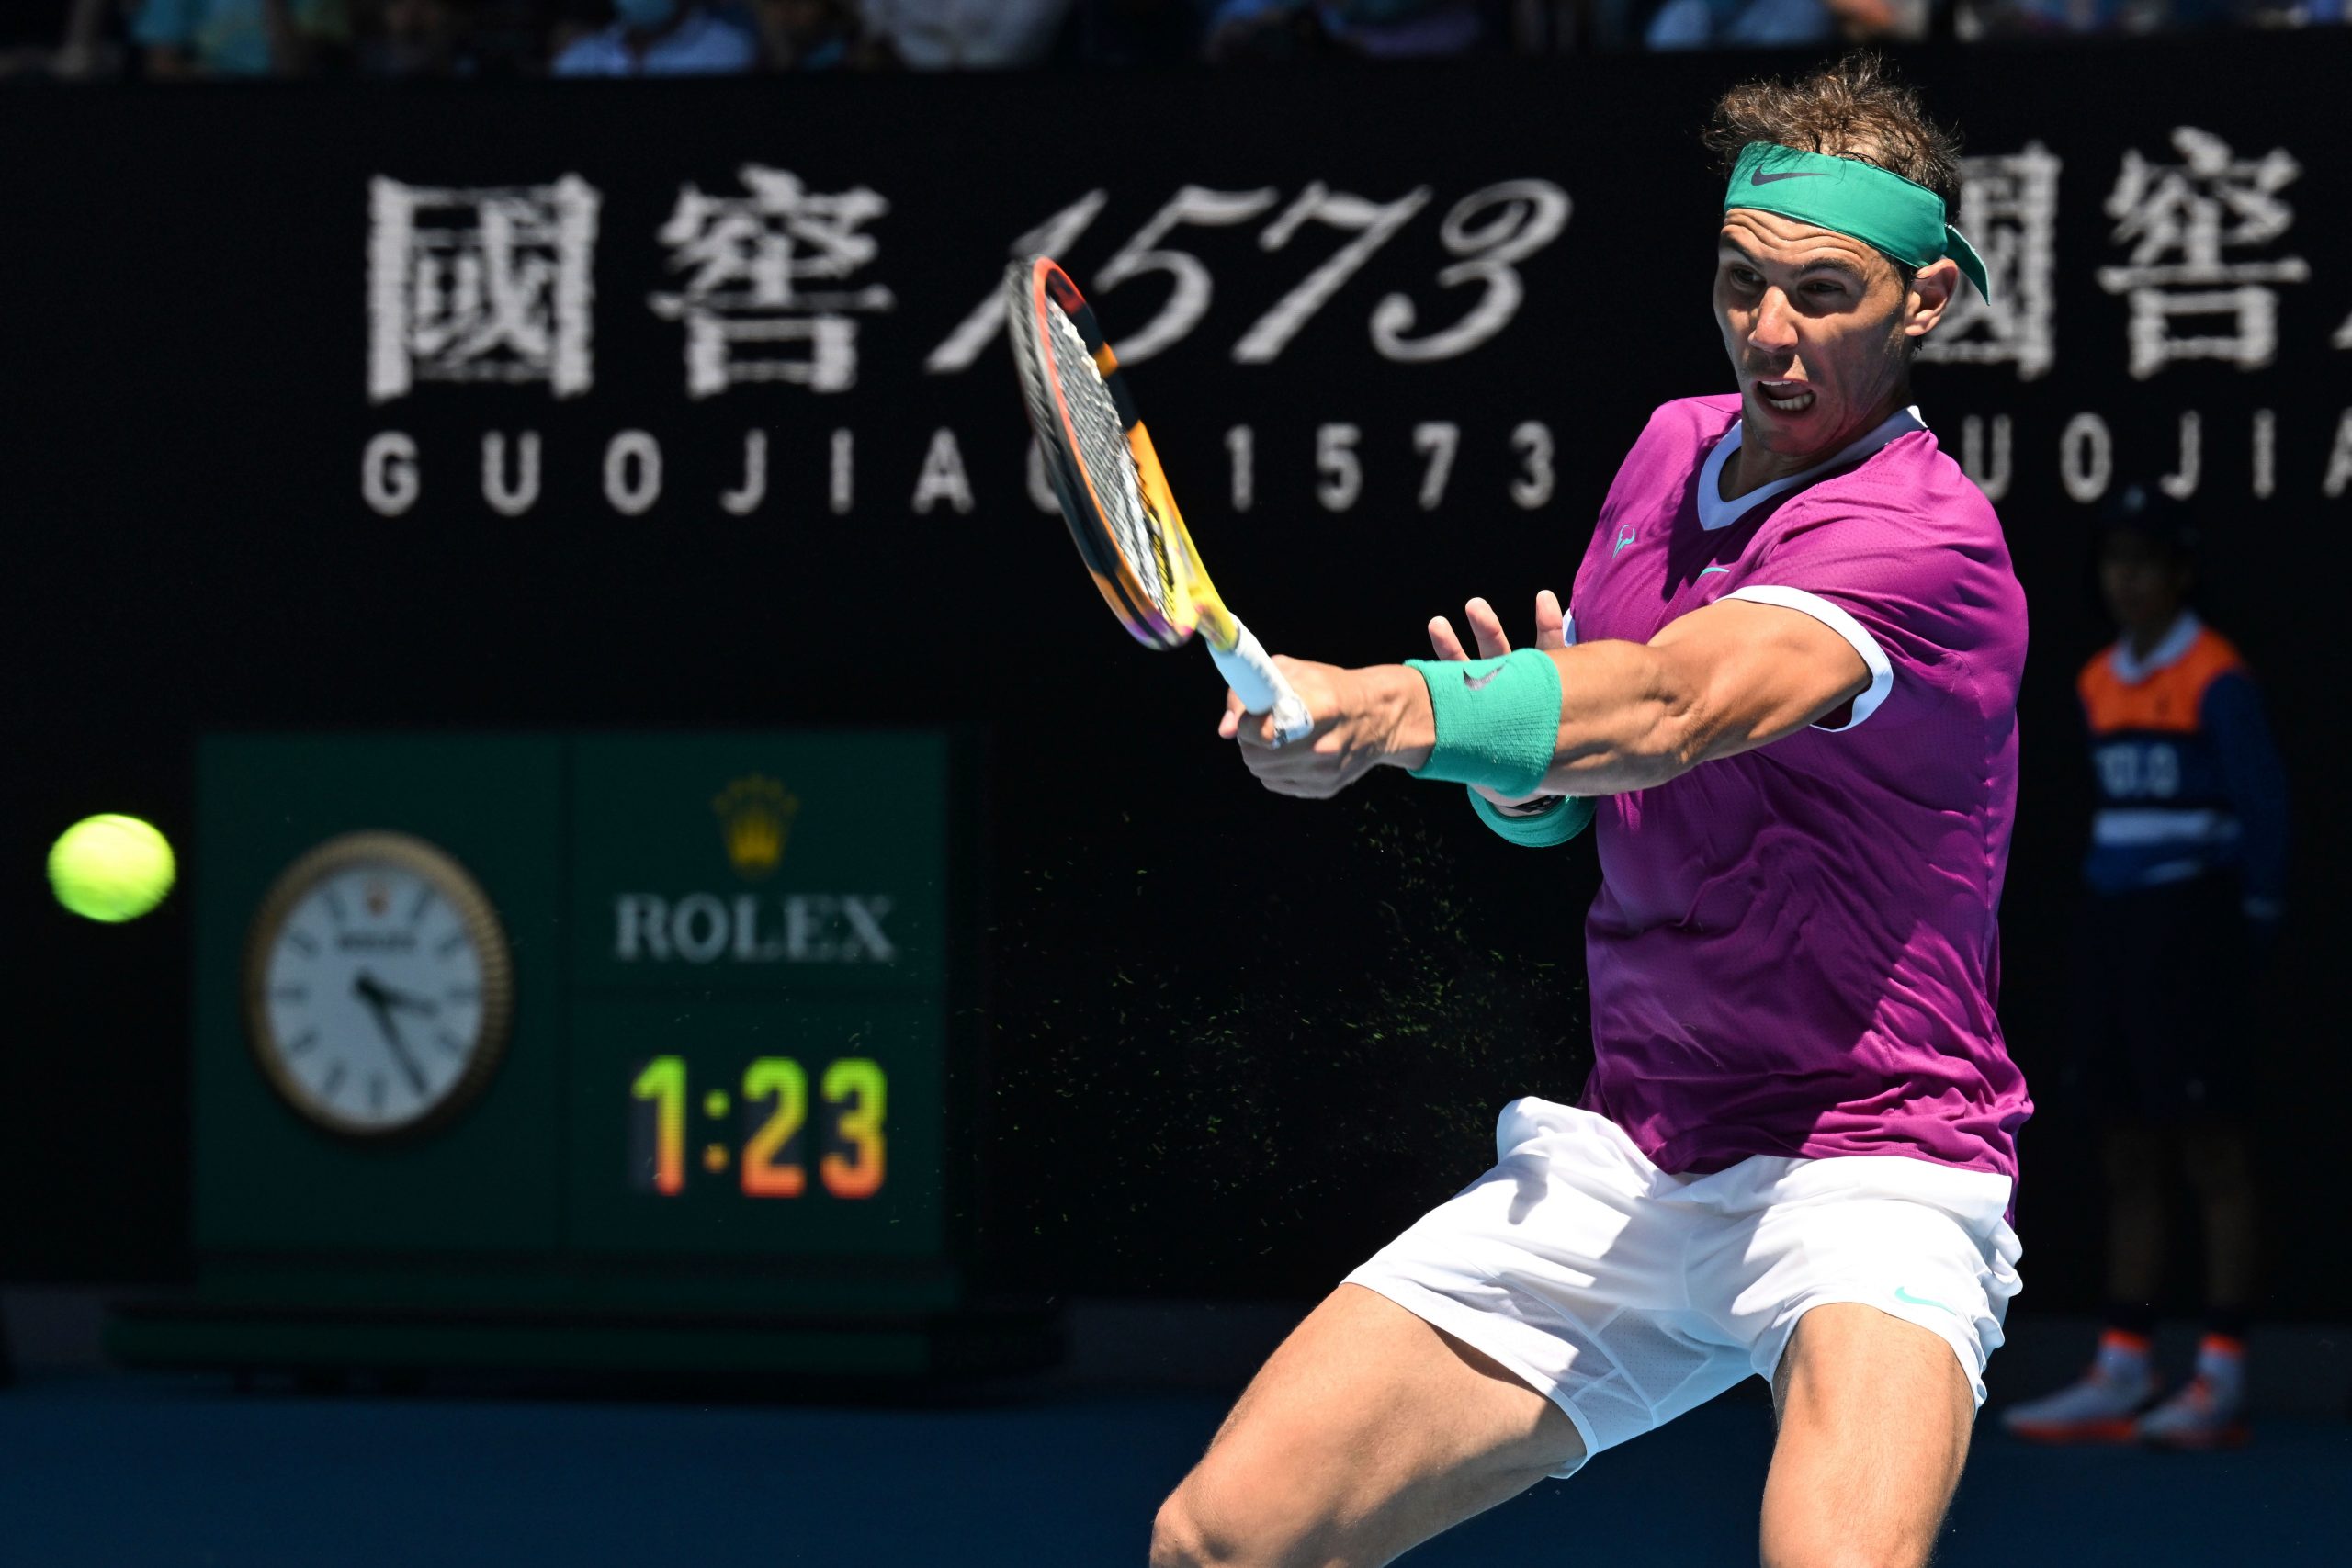 Australian Open Final: Rafael Nadal is sweating against Daniil Medvedev